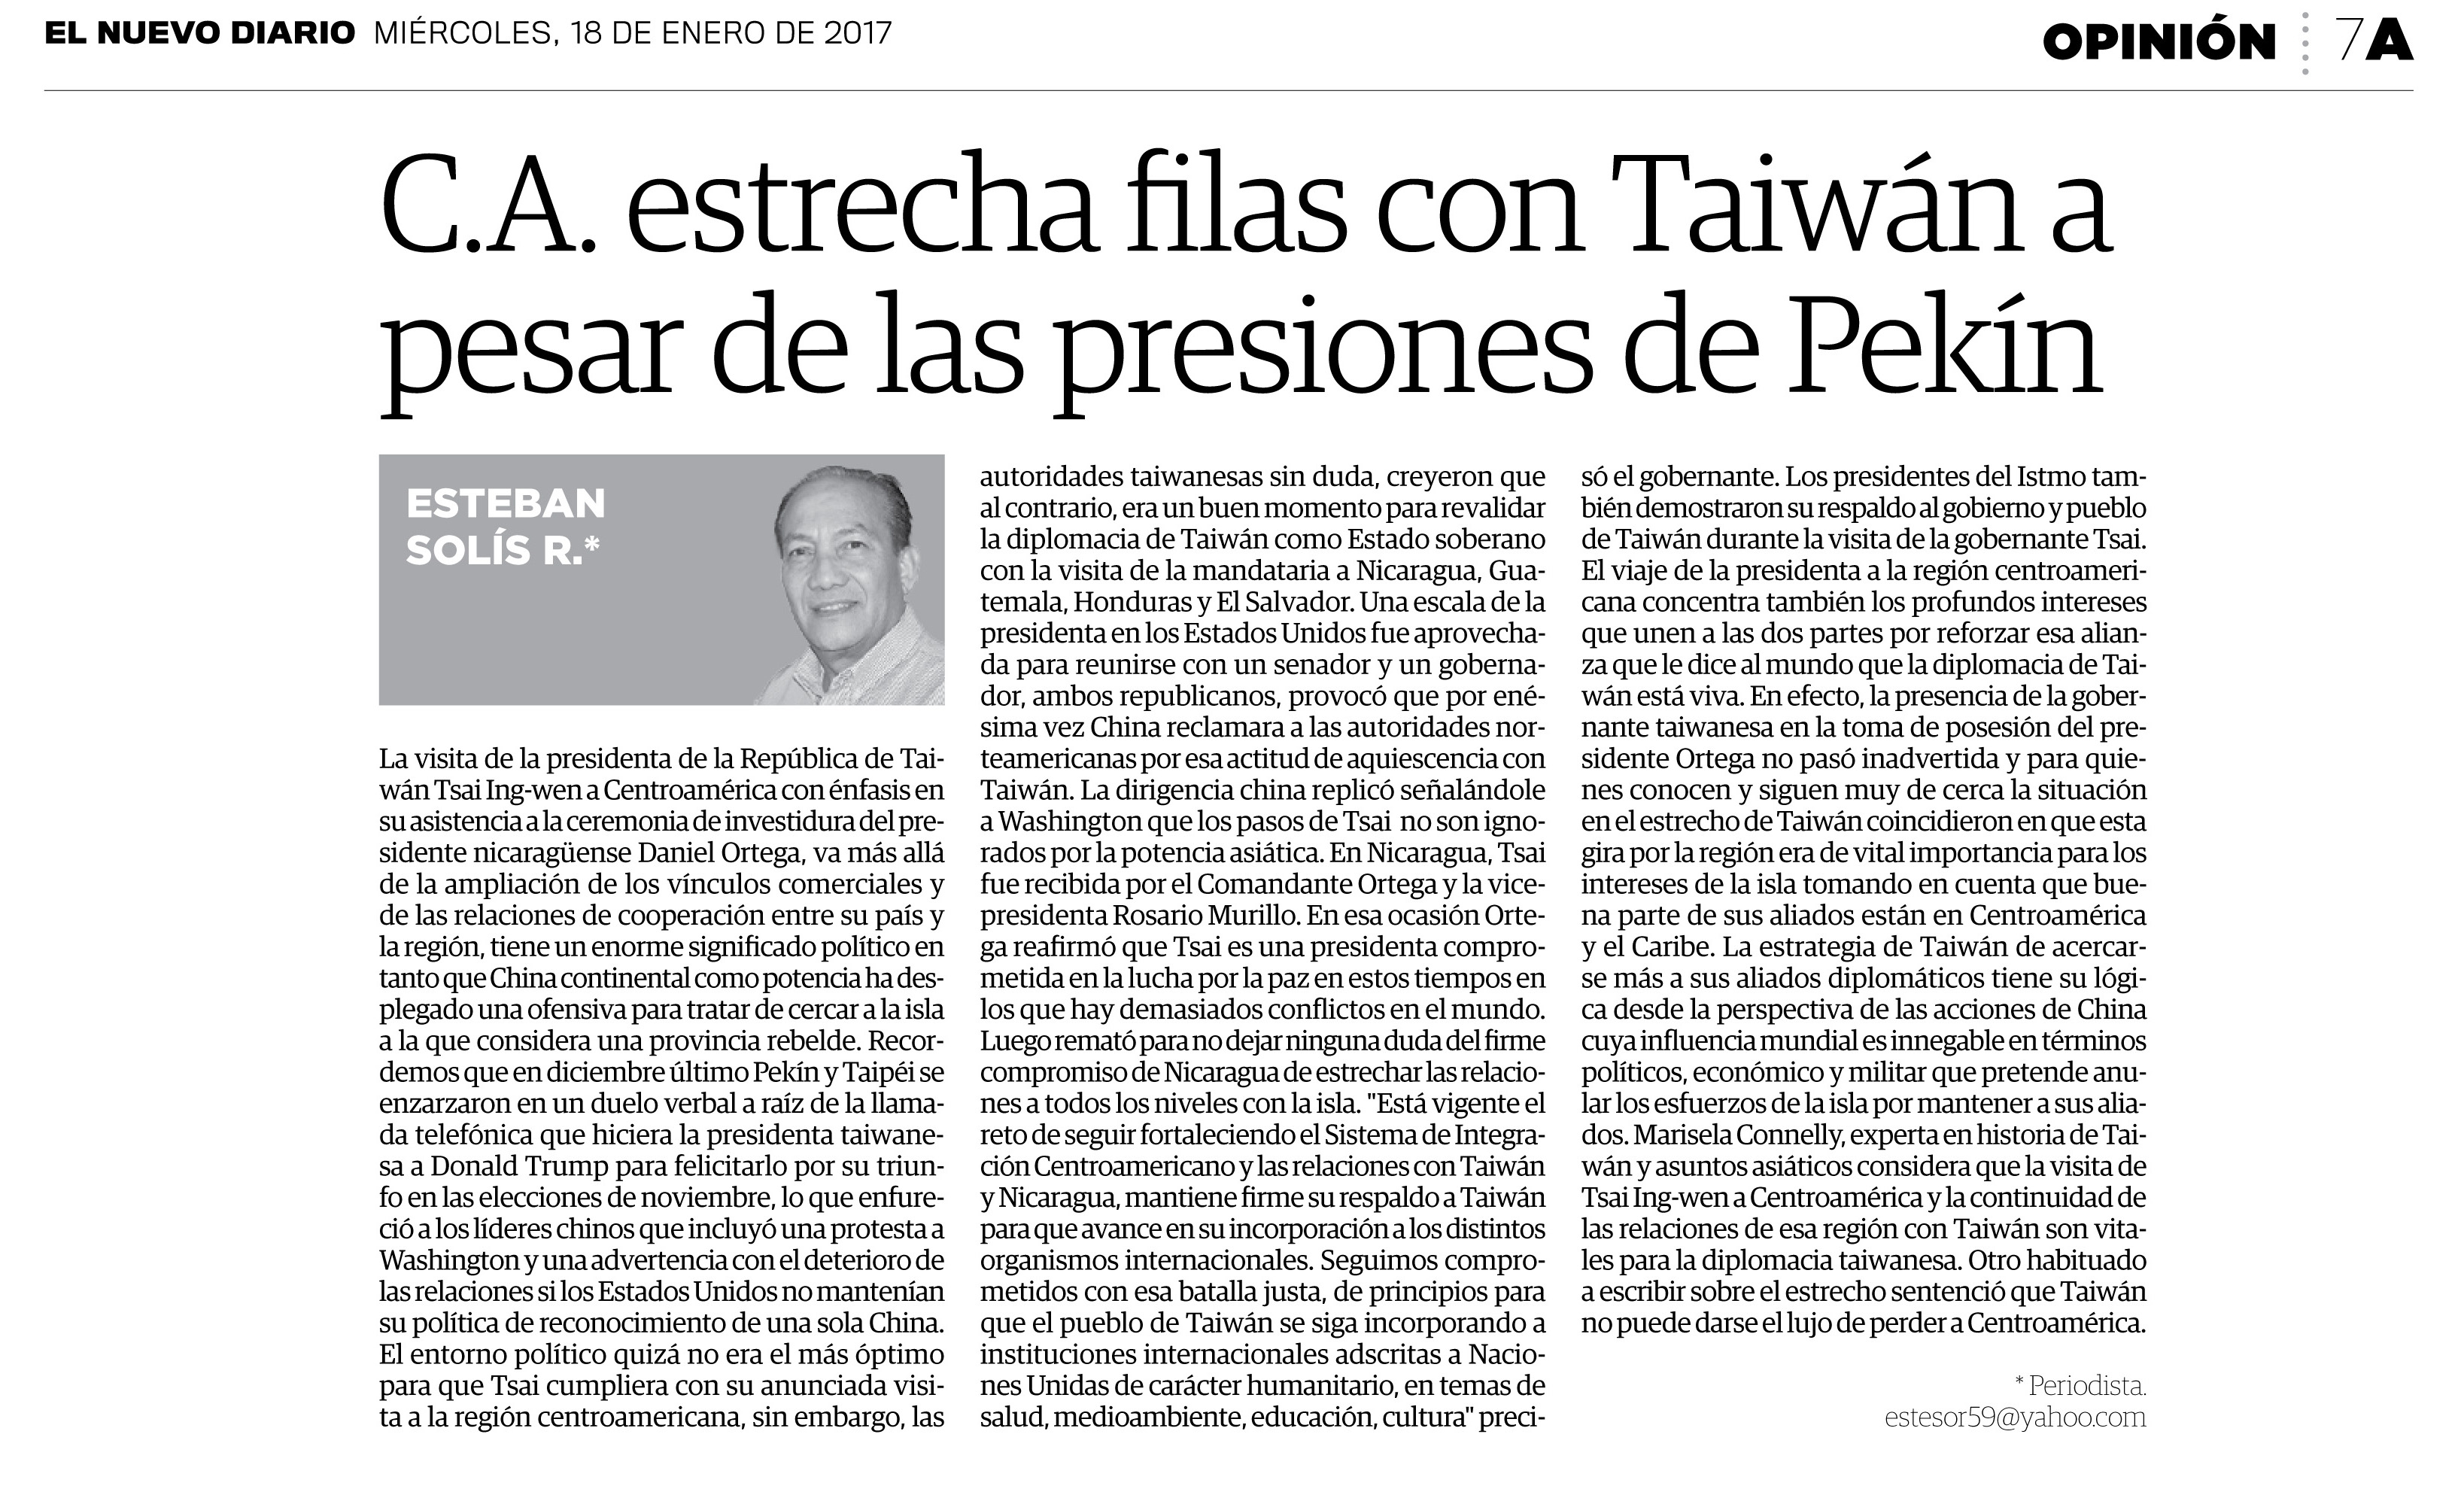 評論：中美洲在北京的壓力下仍與台灣擴展關係